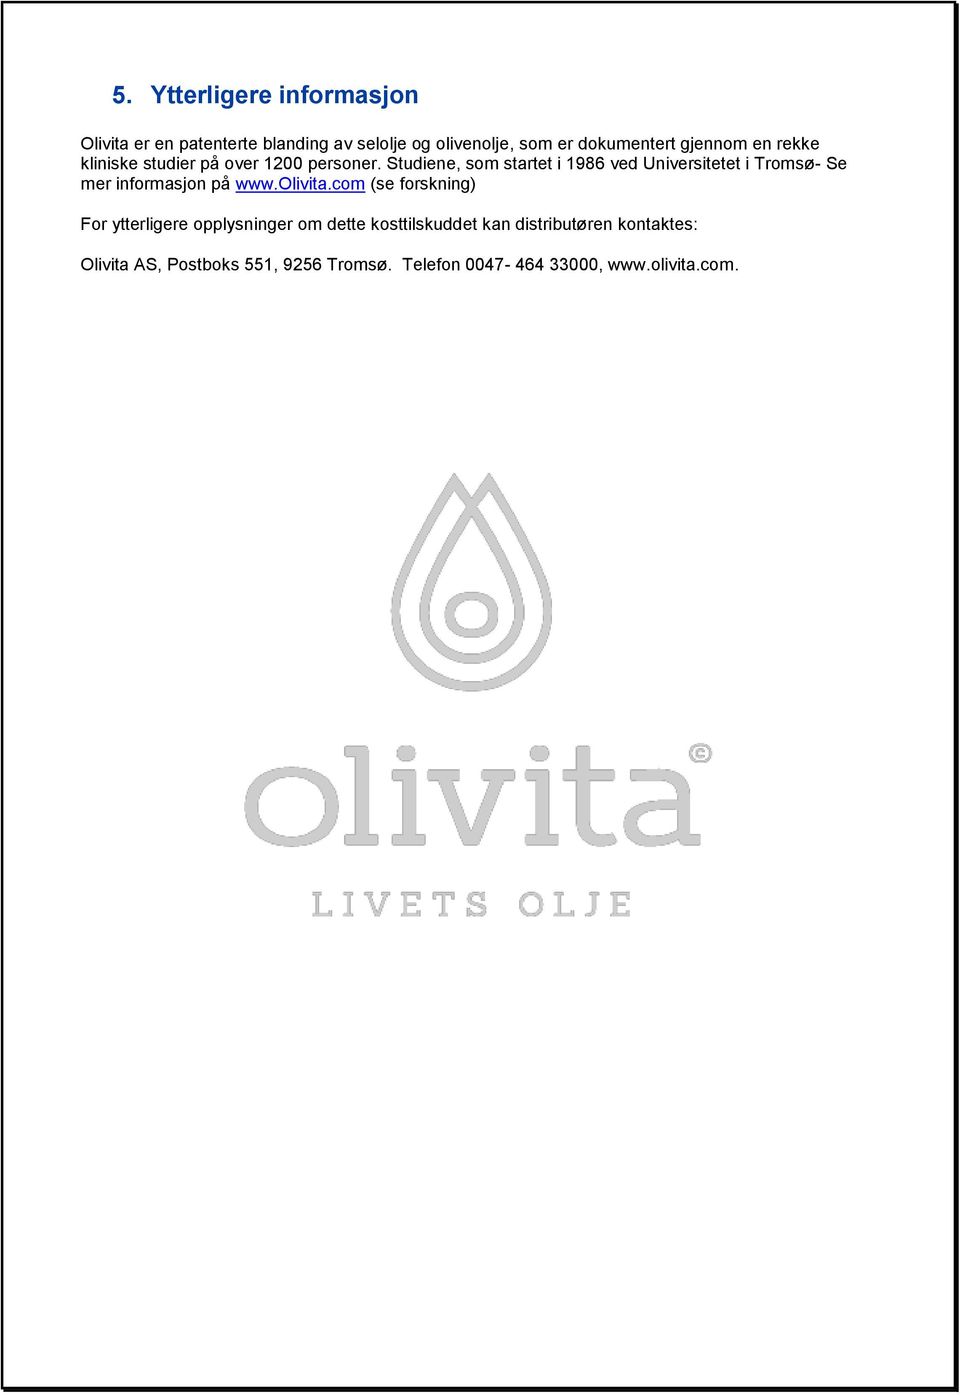 Studiene, som startet i 1986 ved Universitetet i Tromsø- Se mer informasjon på www.olivita.